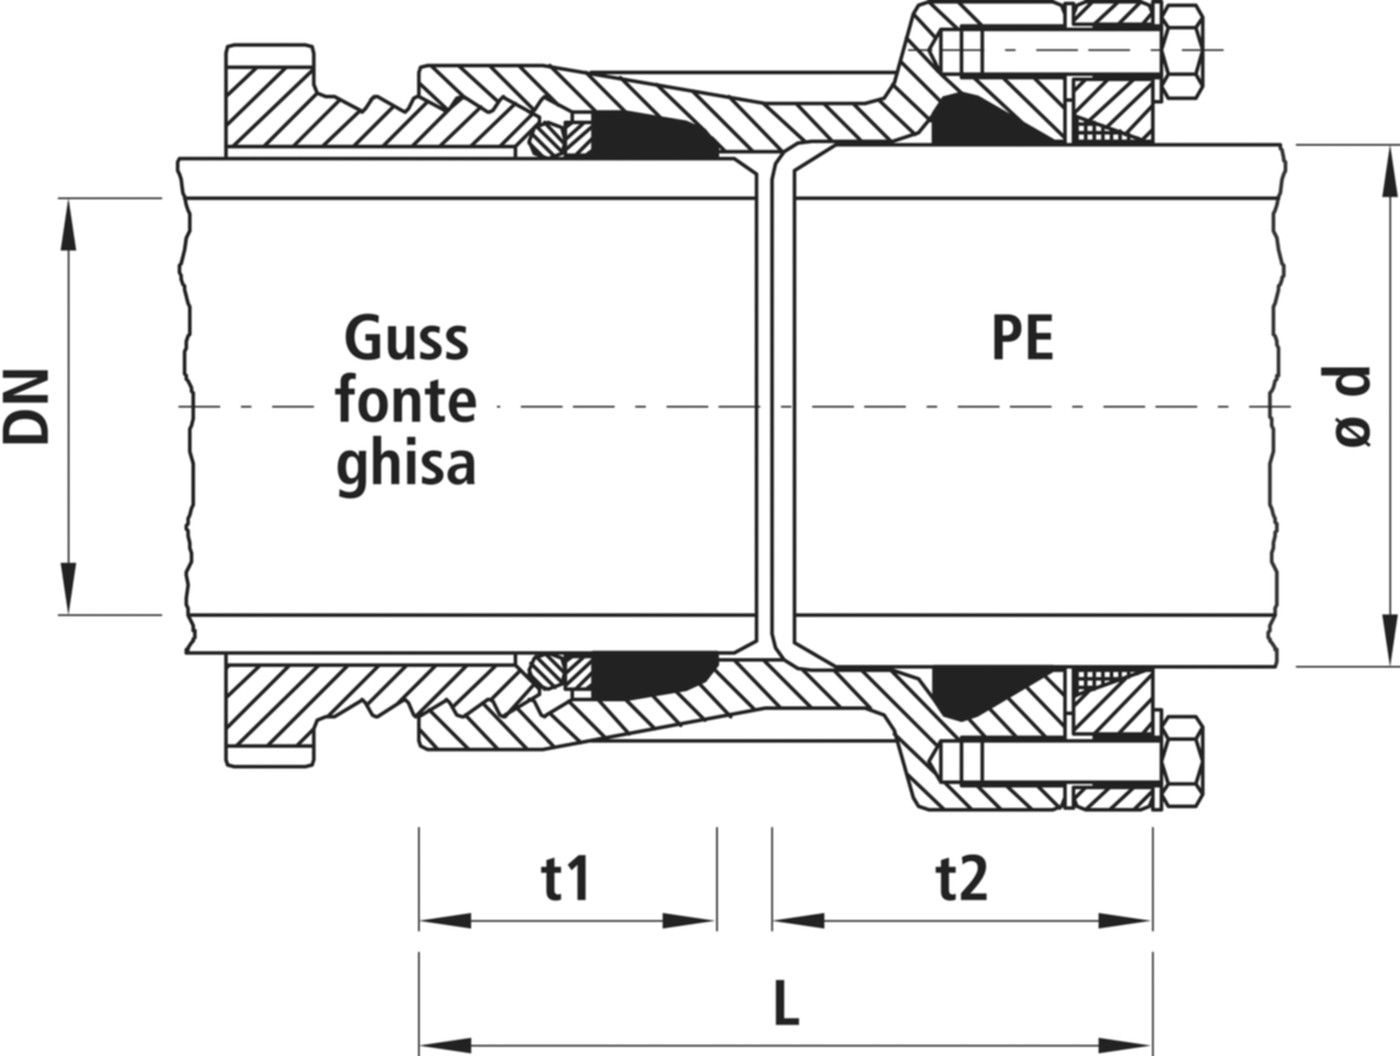 Verbinder Guss/PE, für Wasser 7230 DN 125 / d 160mm - Hawle System 2000